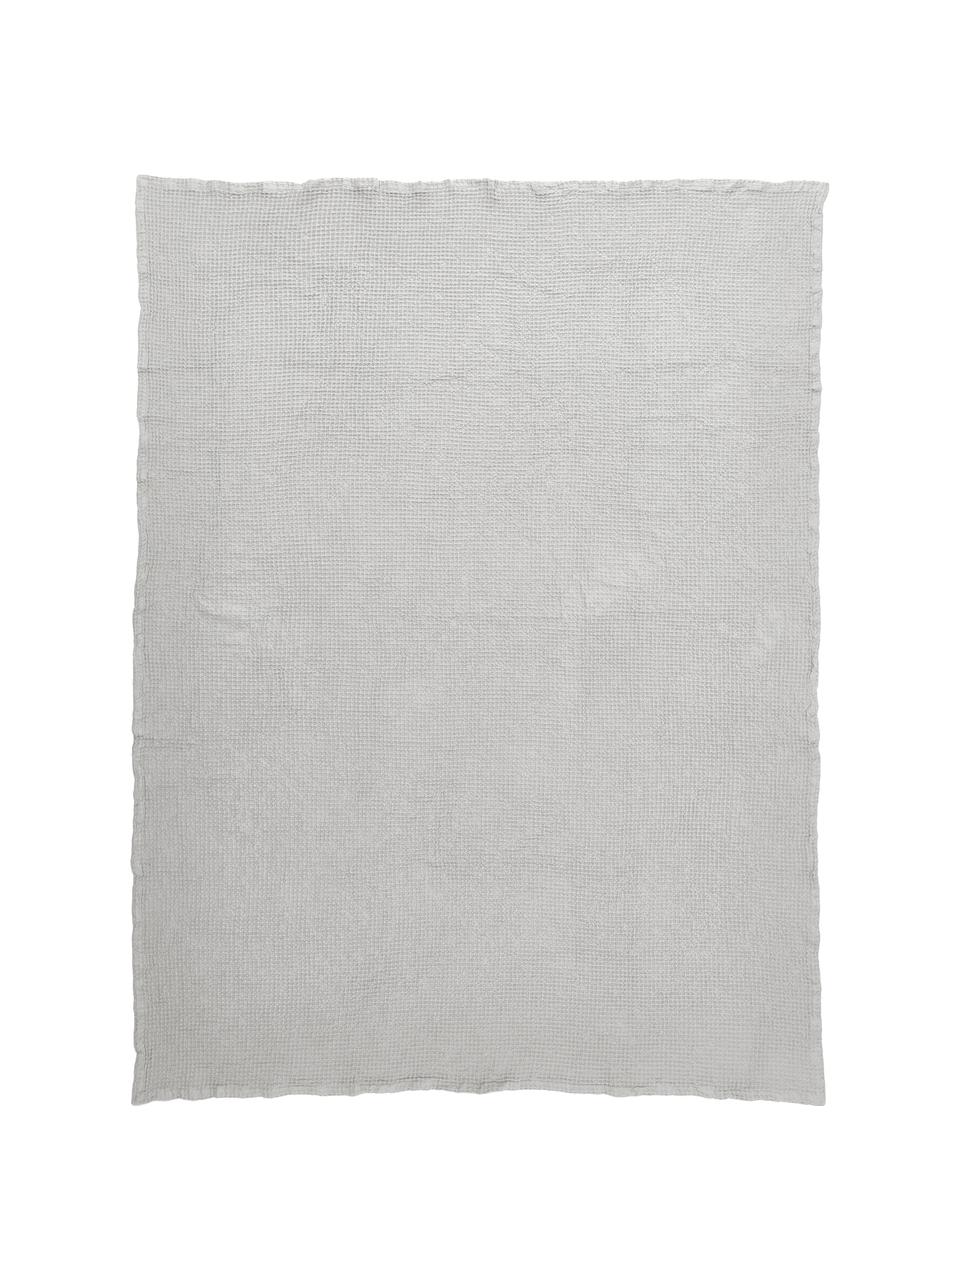 Přehoz z vaflového piké z bavlny Lois, 100 % bavlna, Světle šedá, Š 180 cm, D 260 cm (pro postele s rozměry až 140 x 200 cm)